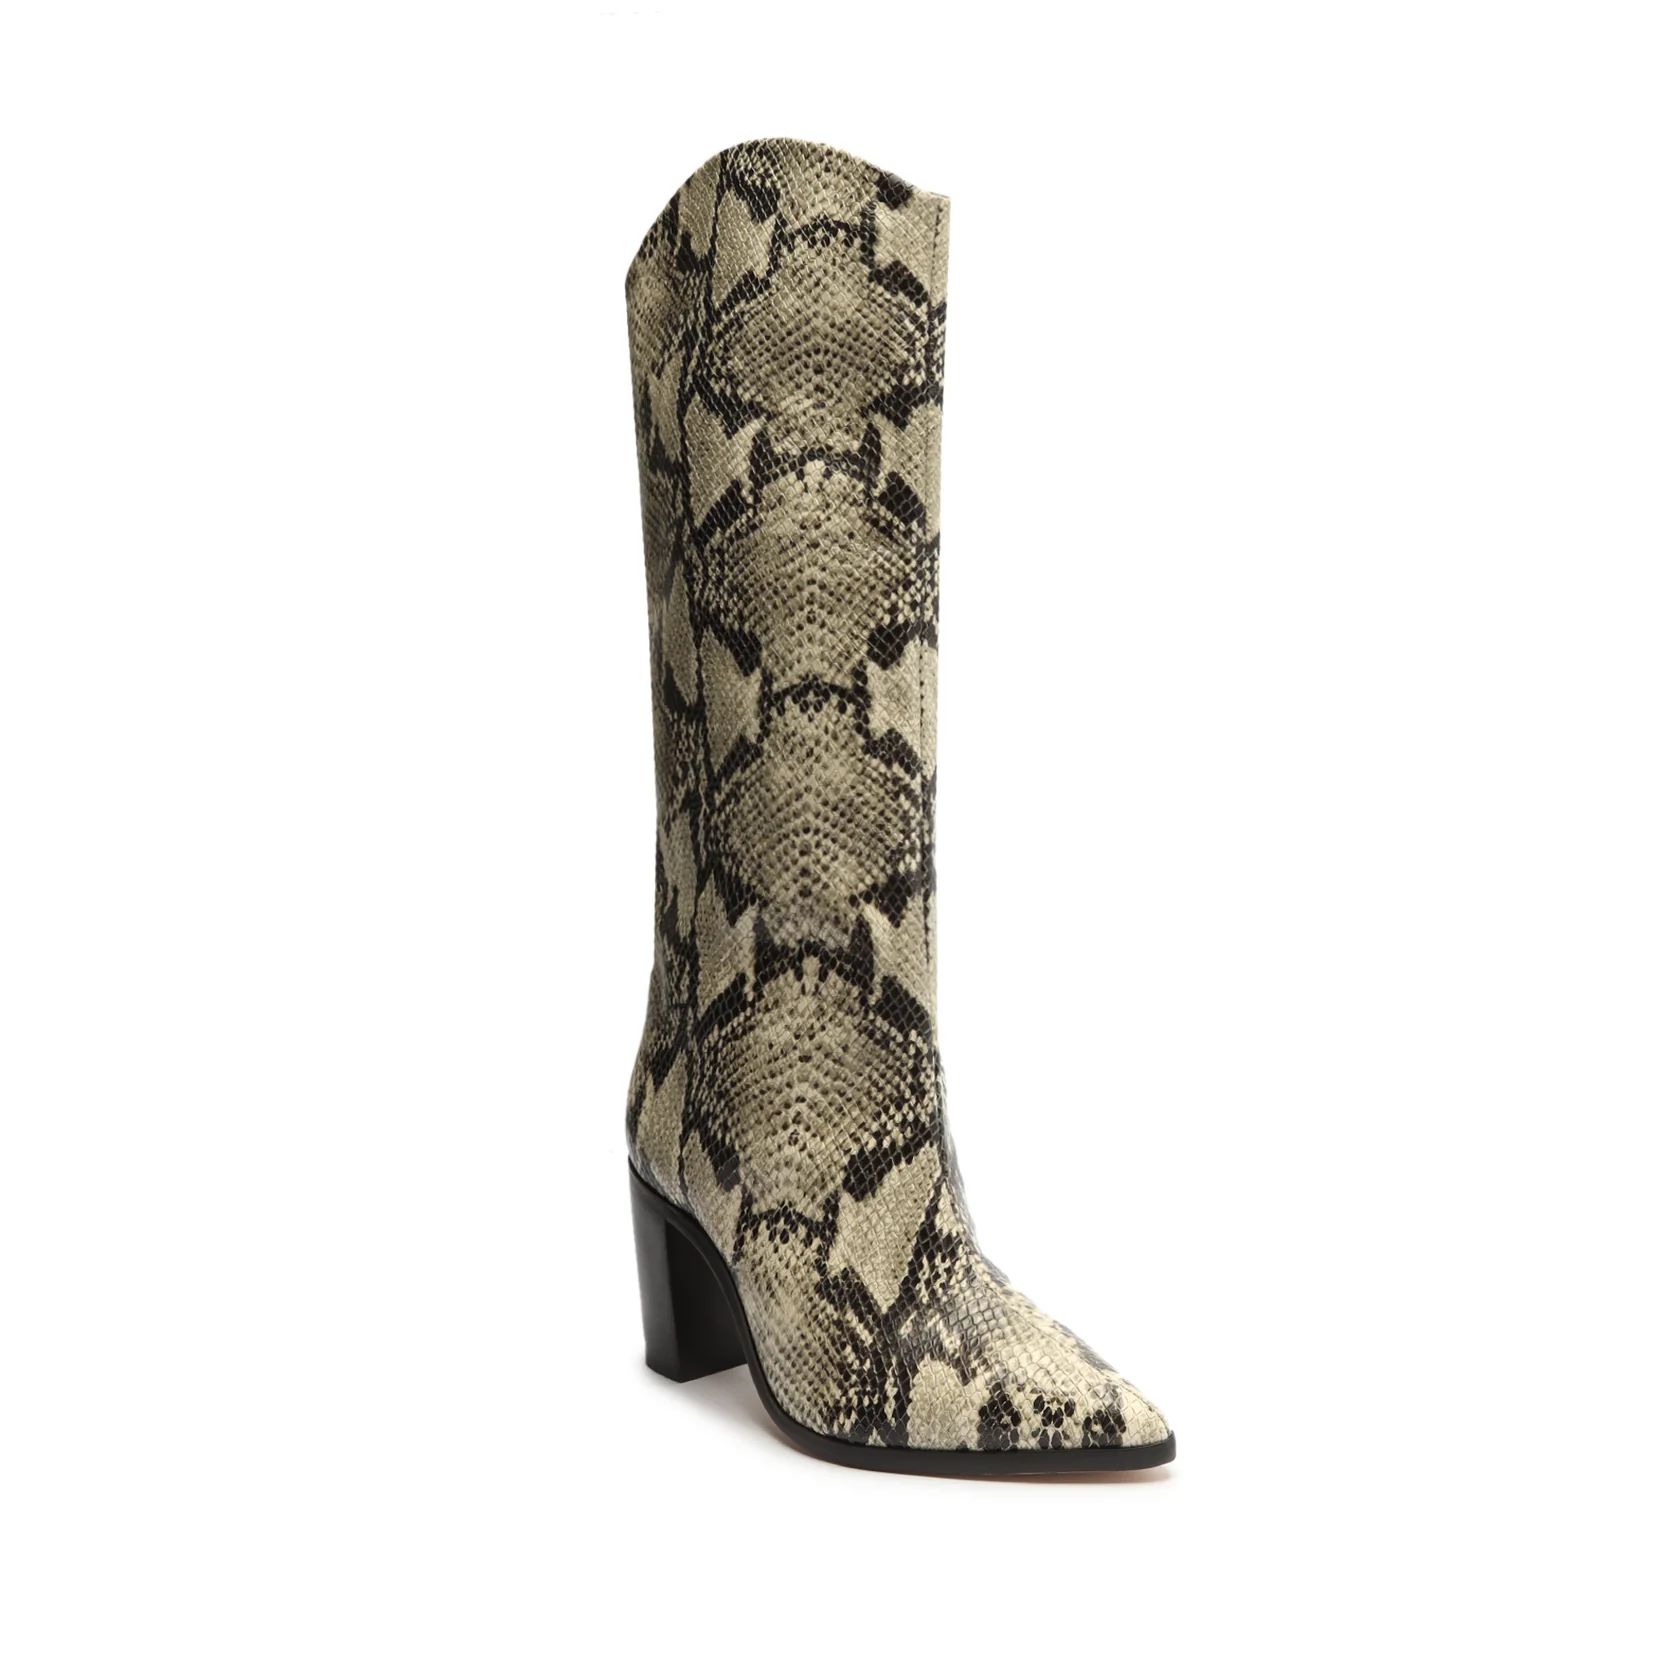 Maryana Block Pointed Toe Block Heel Boot in Snake Print | Schutz Shoes | Schutz Shoes (US)